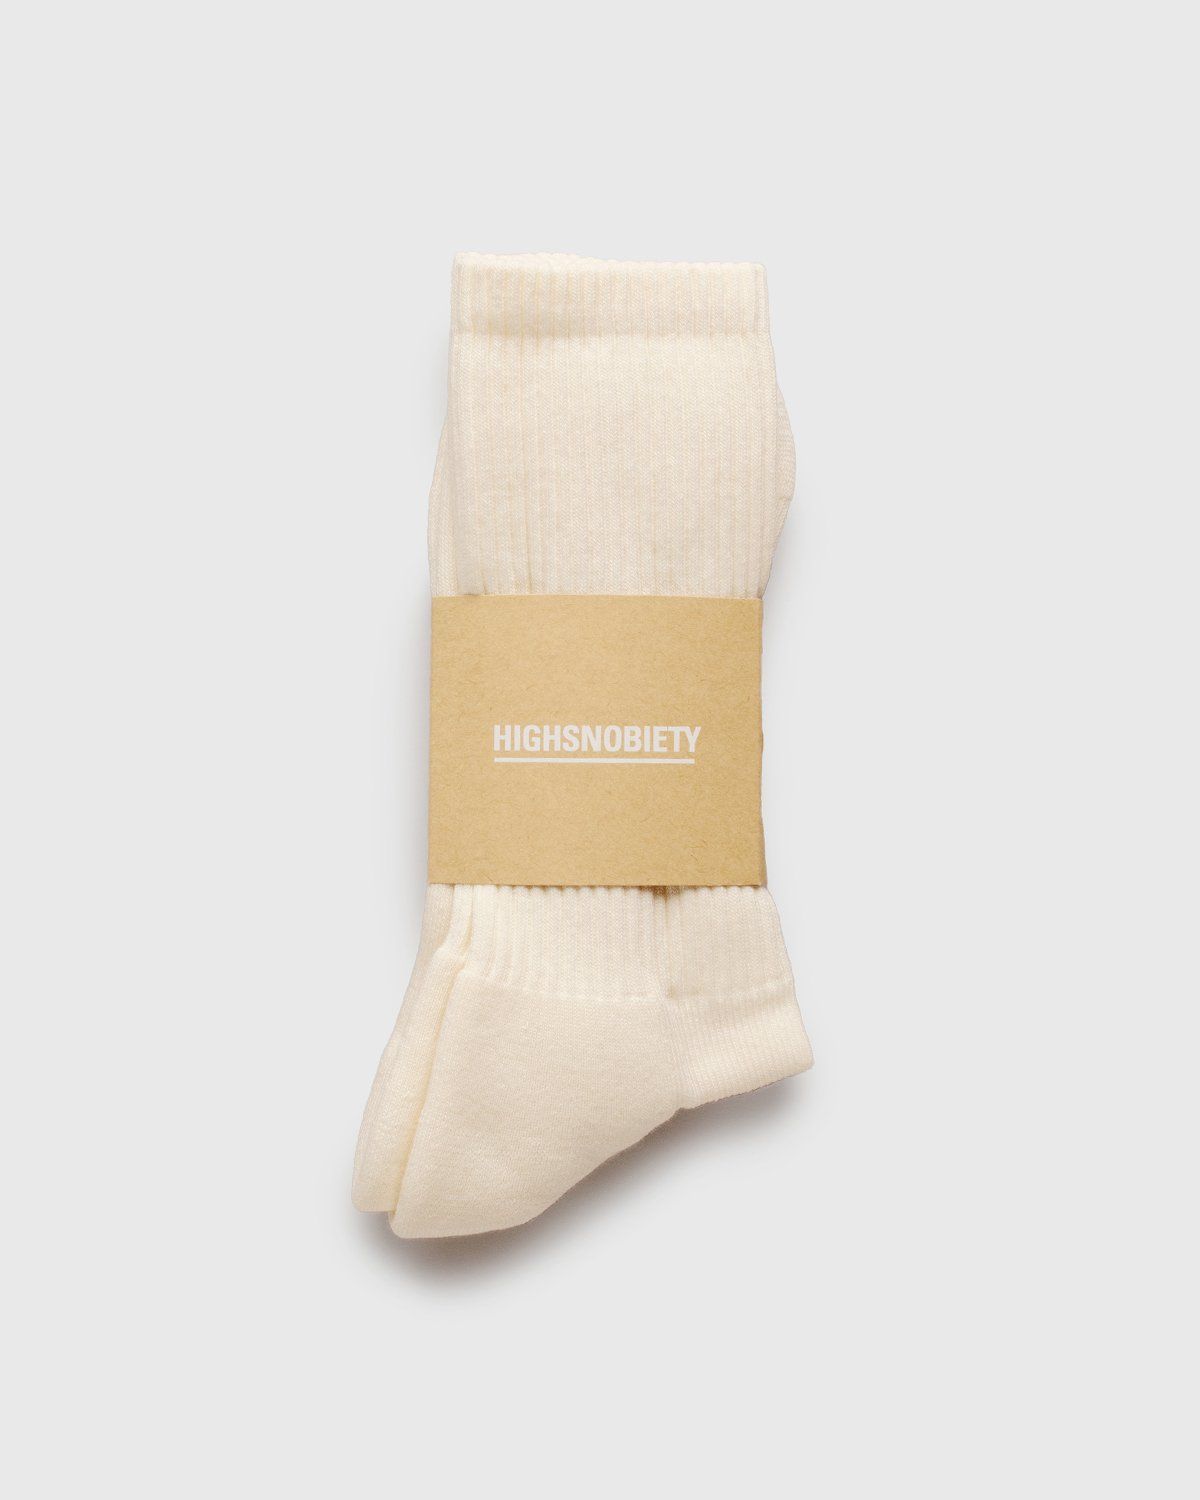 Highsnobiety – Socks Off White - Socks - White - Image 2